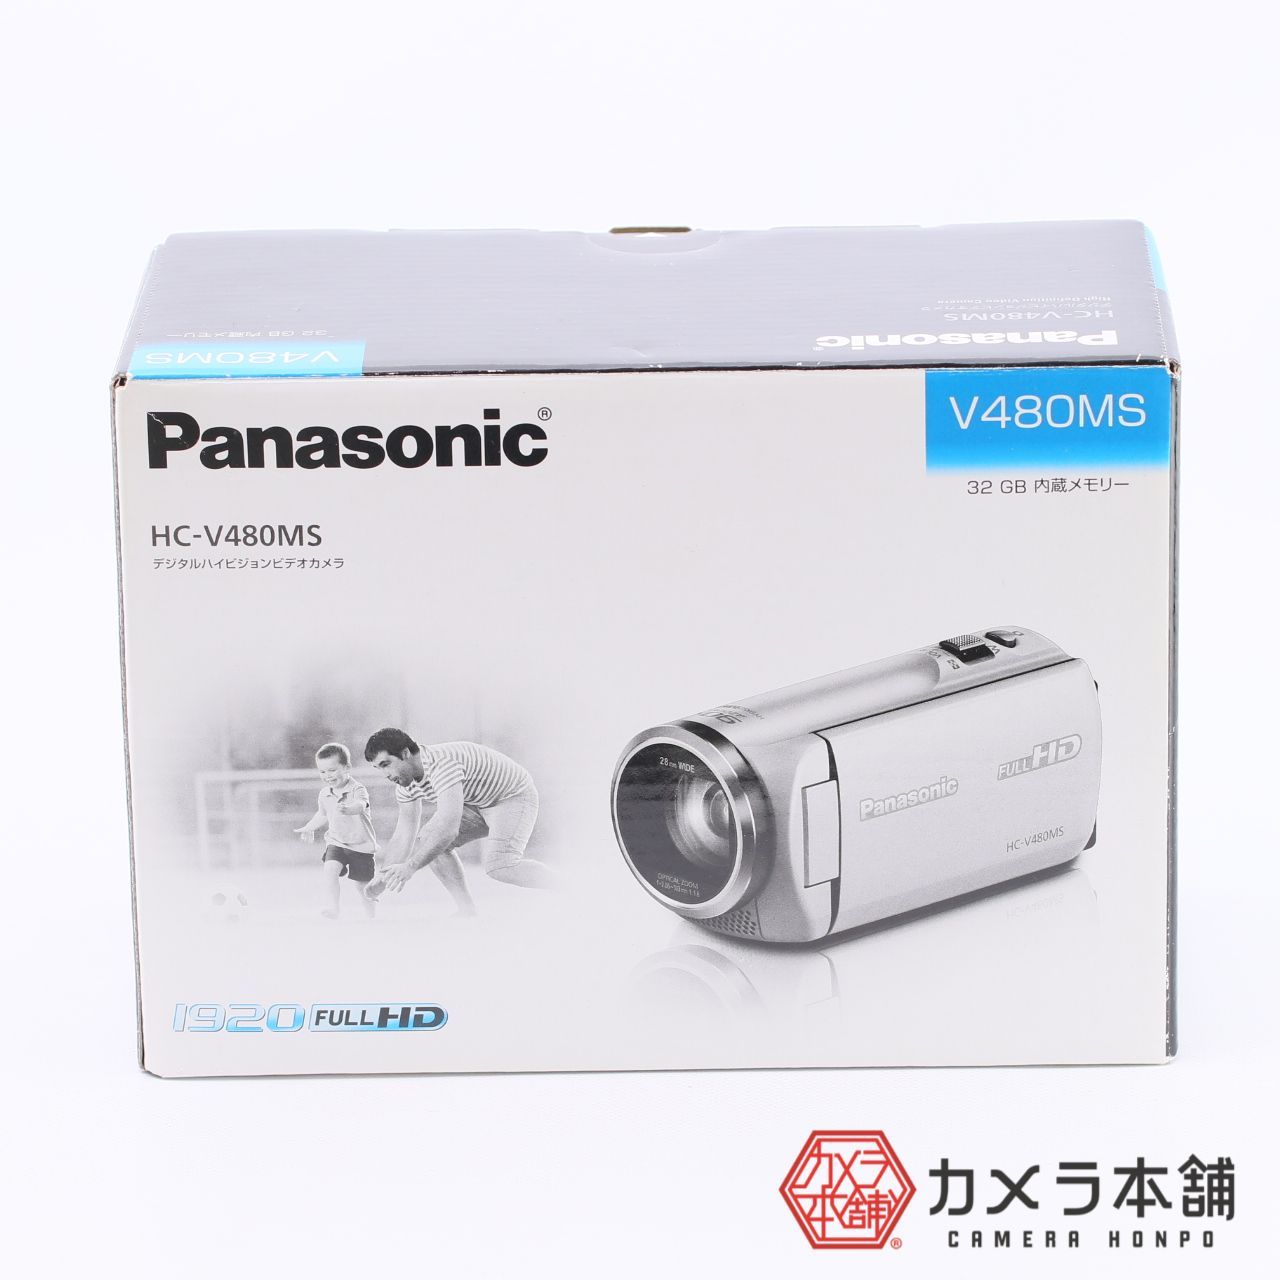 未使用品 Panasonic HDビデオカメラ HC-V480MS-W 32GB - カメラ本舗 ...